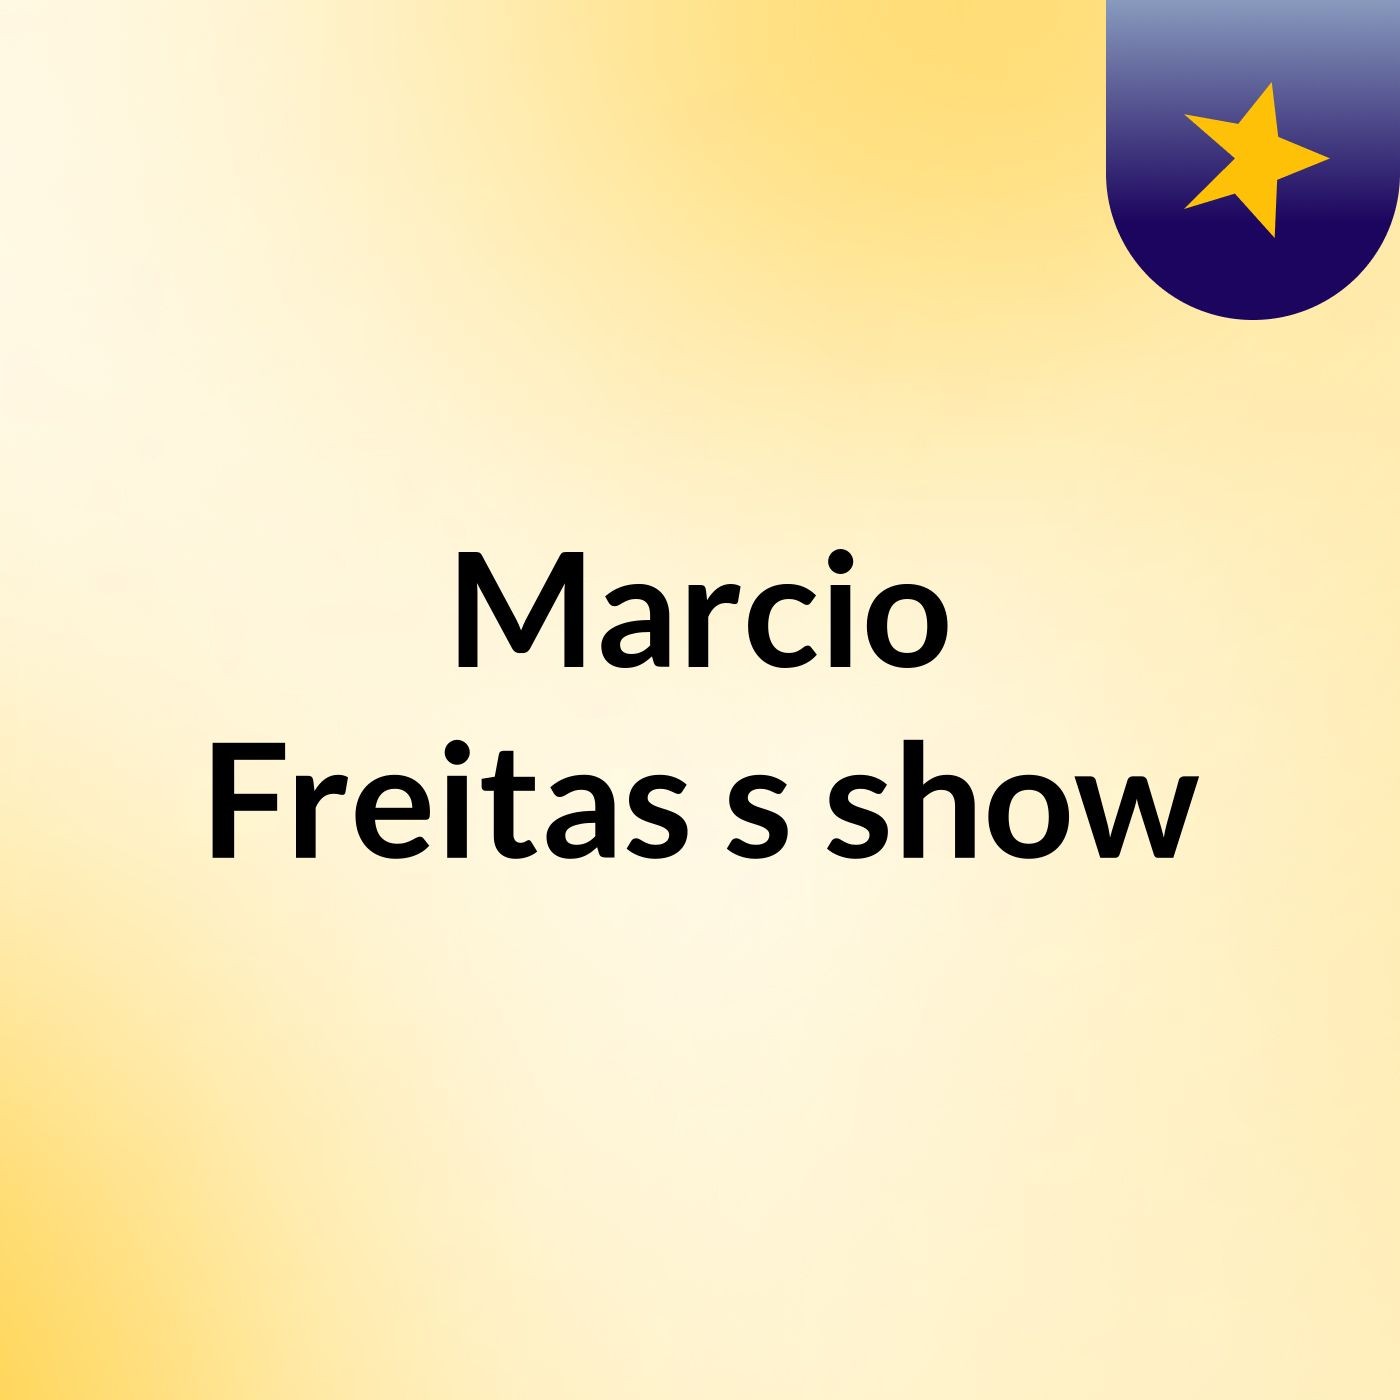 Marcio Freitas's show